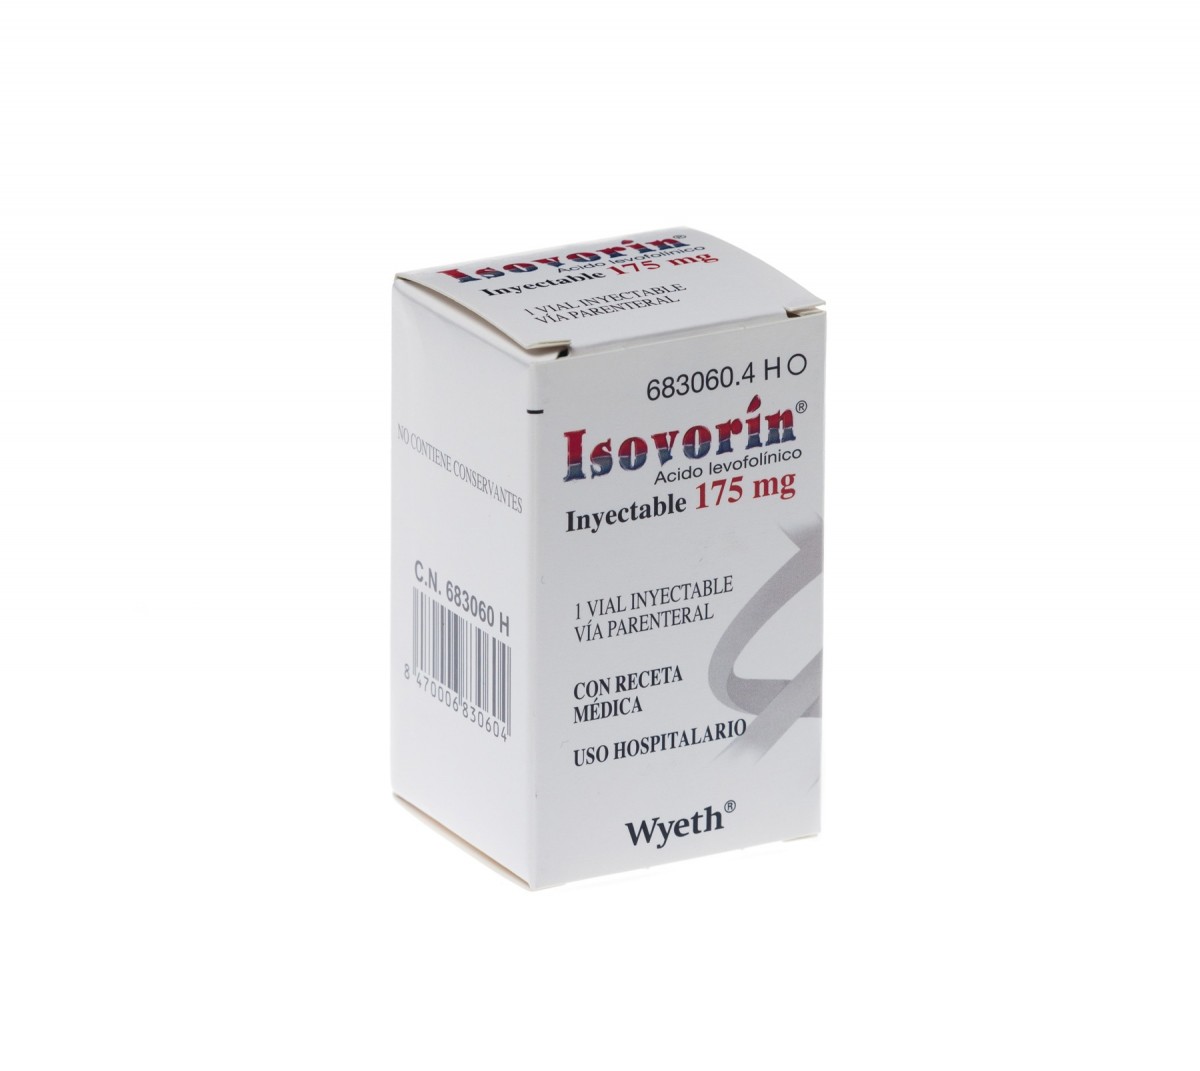 ISOVORIN 175 mg INYECTABLE, 1 vial de 38 ml fotografía del envase.